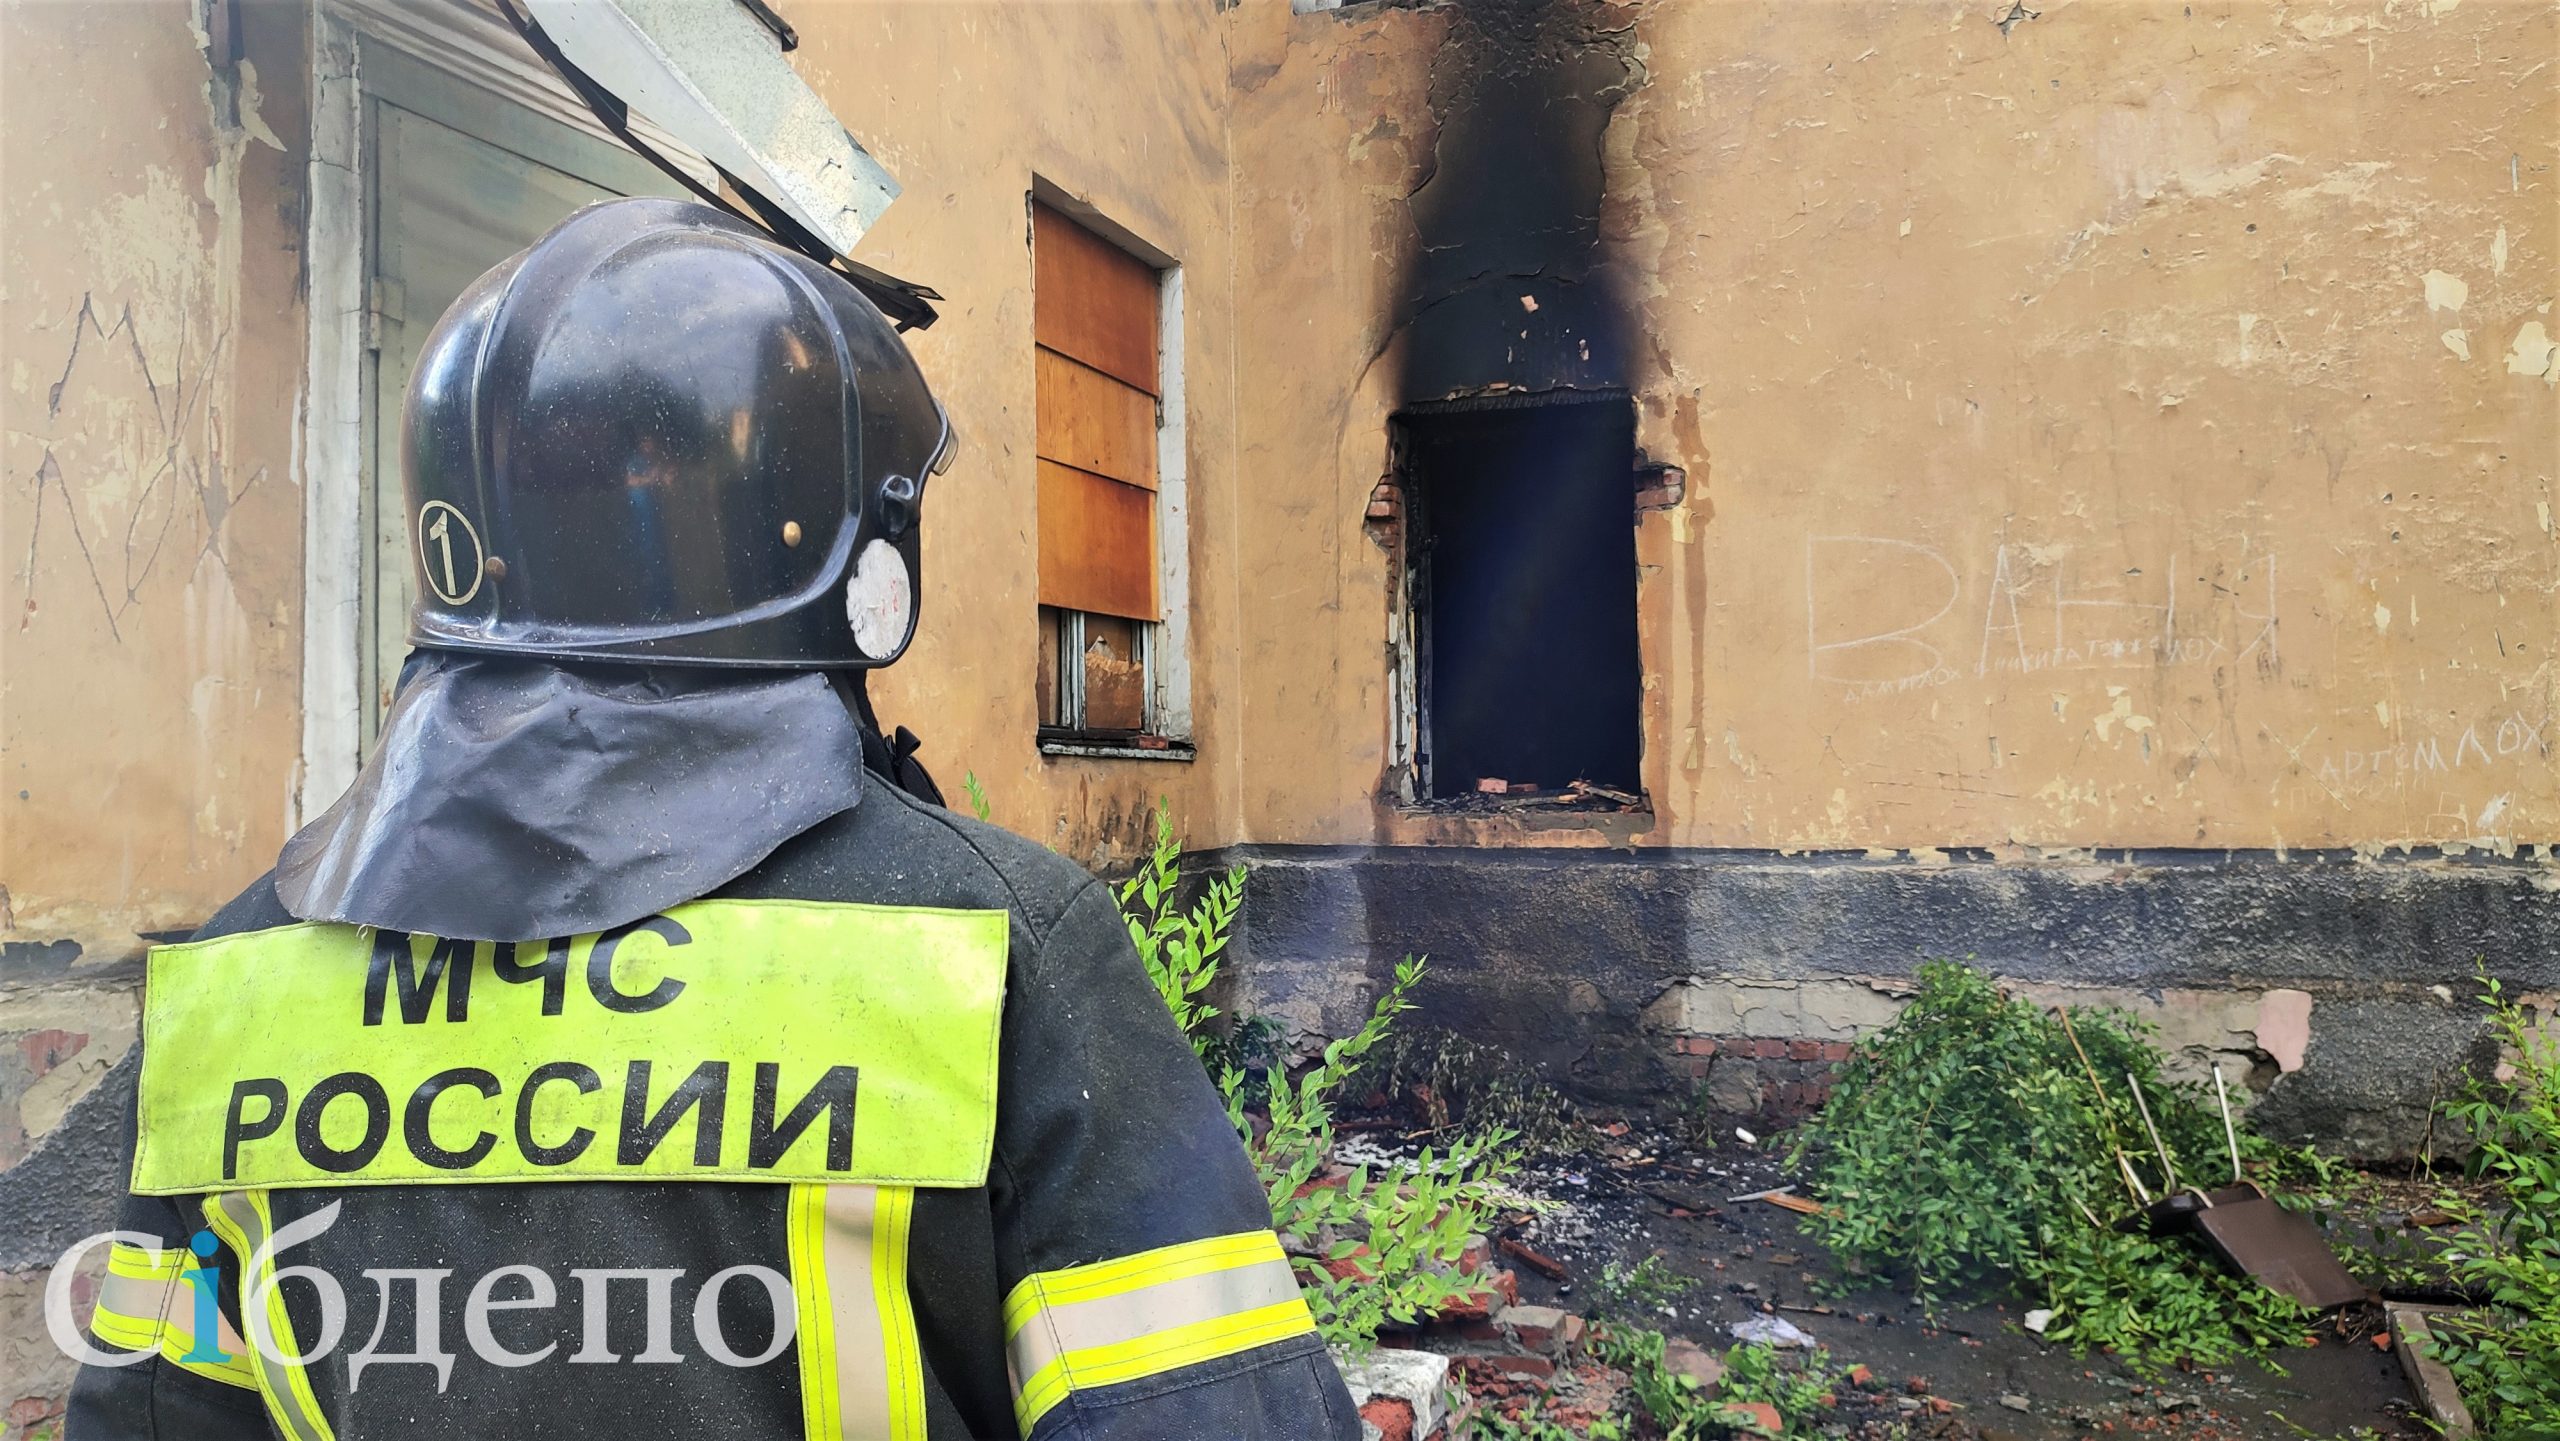 «Уголок нездоровья»: в центре Новокузнецка загорелось аварийное здание бывшей поликлиники